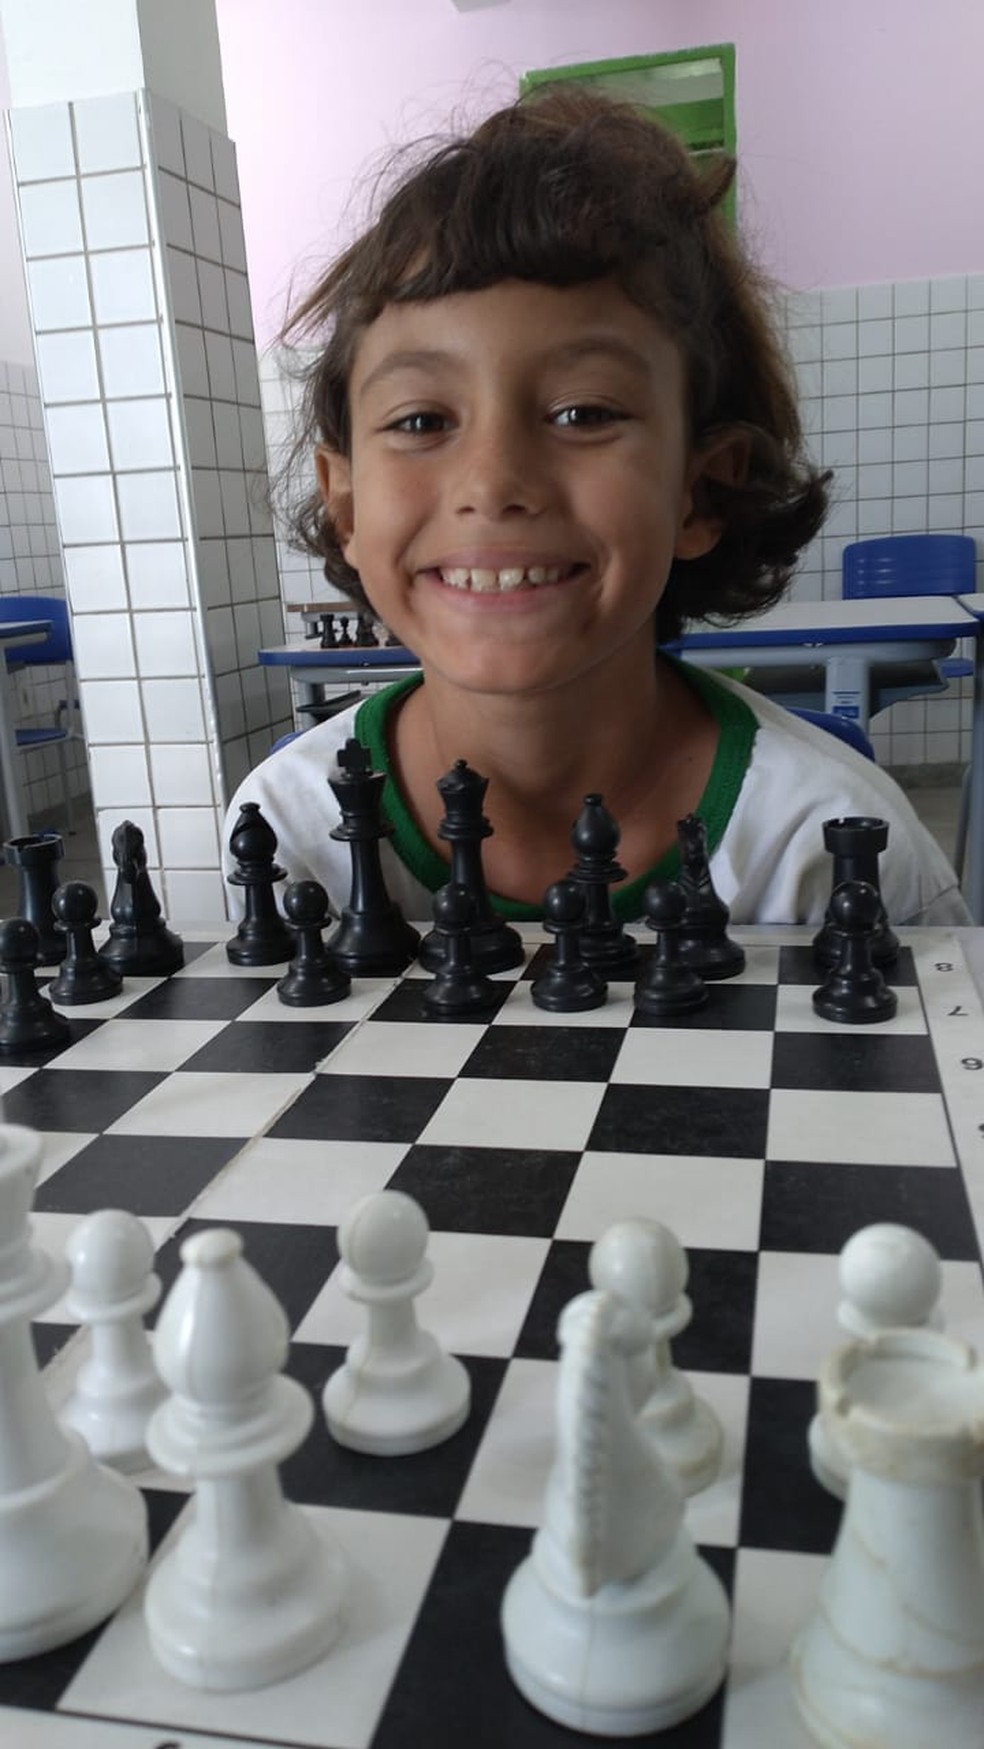 Jogo de Xadrez fará parte do currículo da rede municipal de ensino